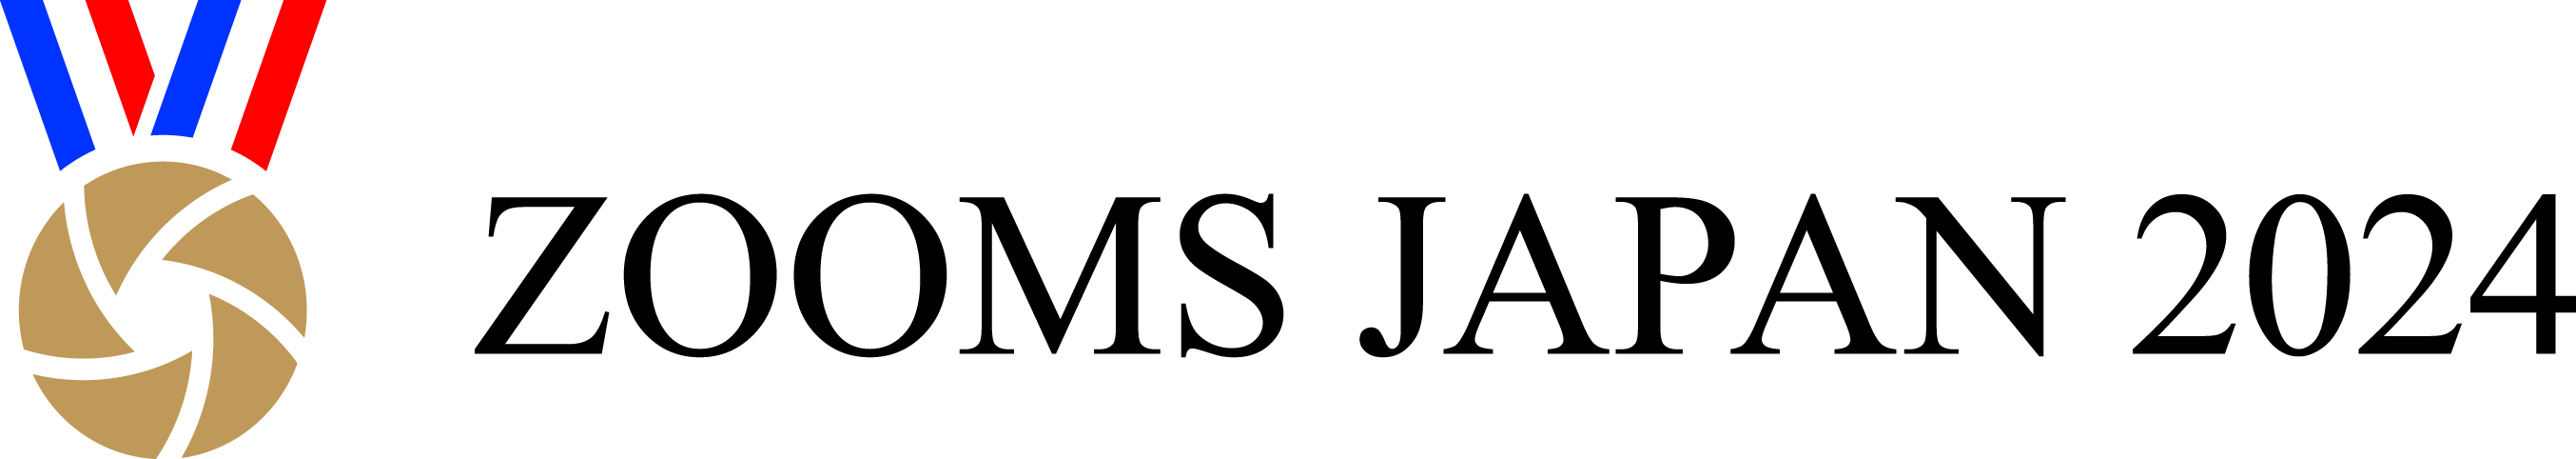 Logo Zooms Japan 2024